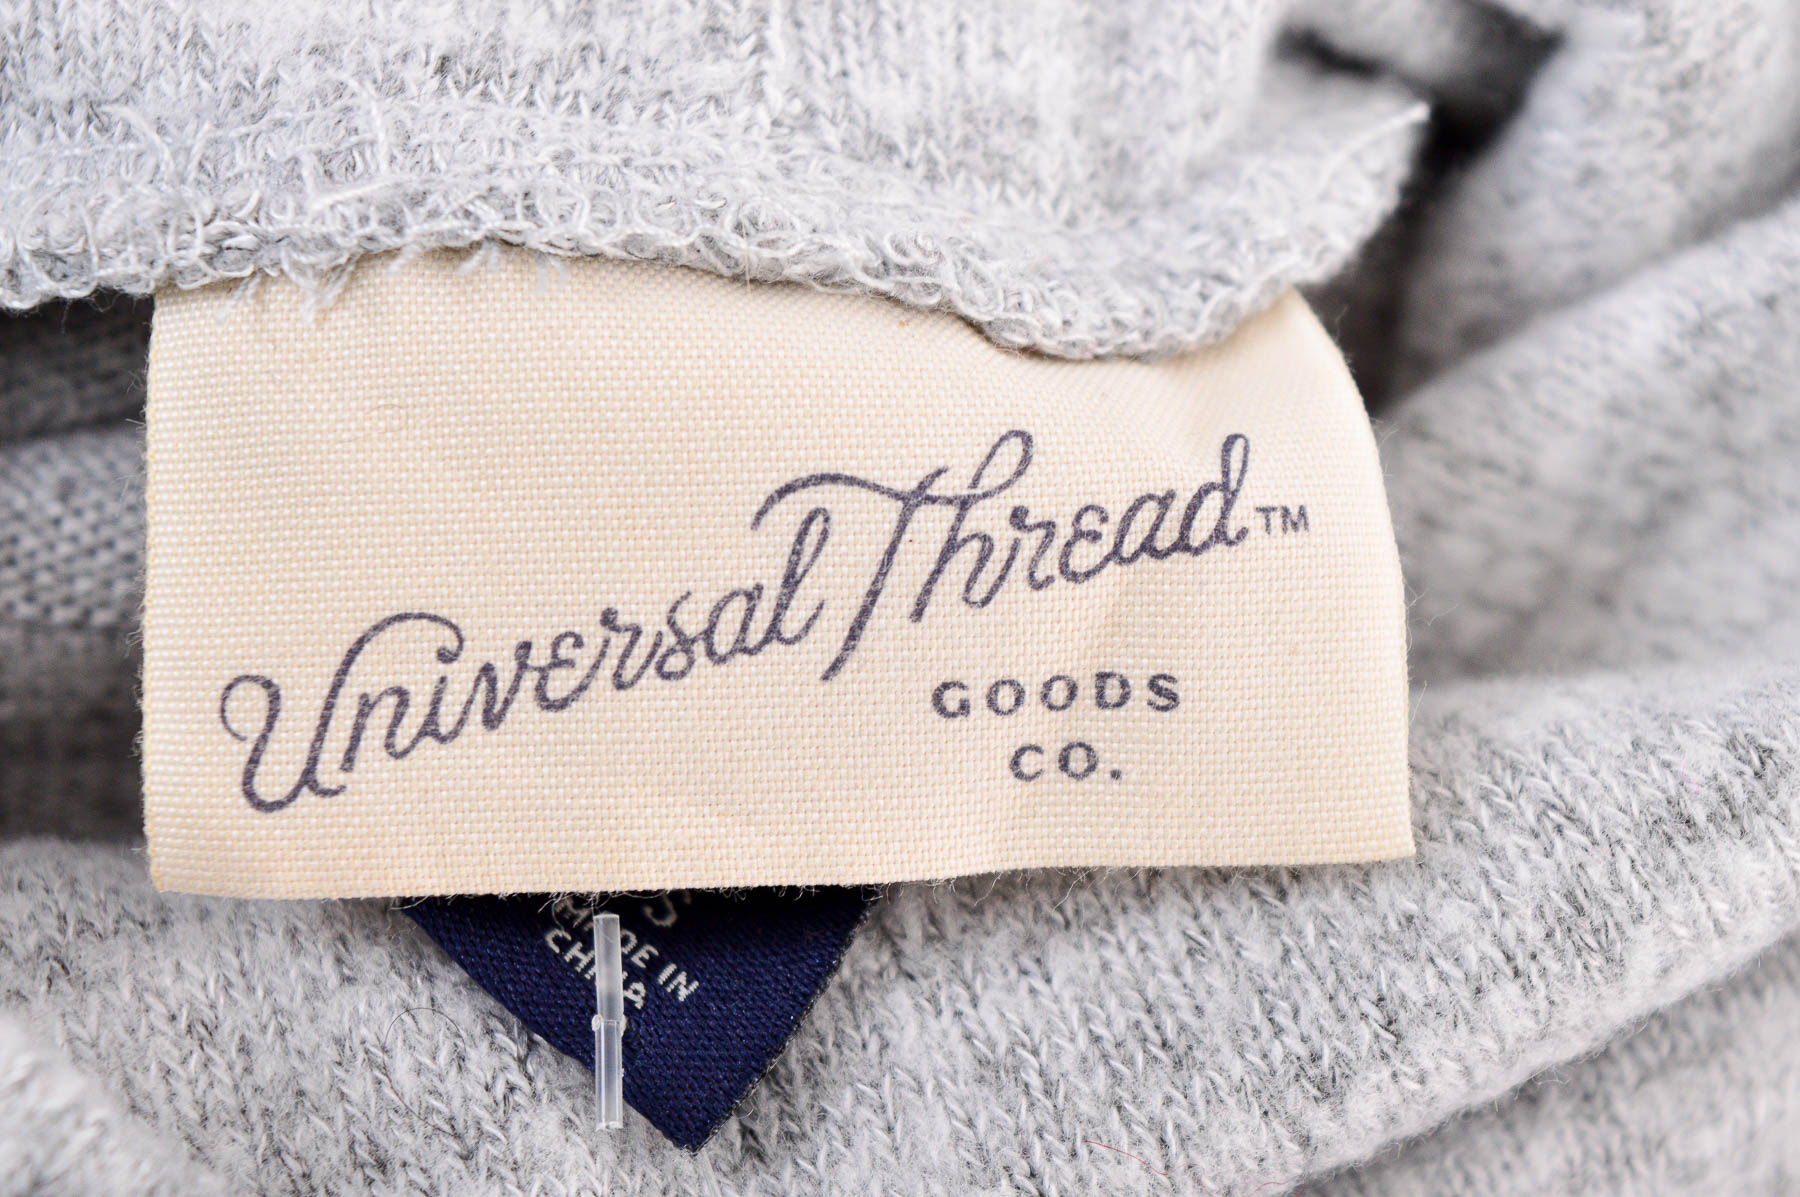 Γυναικείο πουλόβερ - Universal Thread - 2